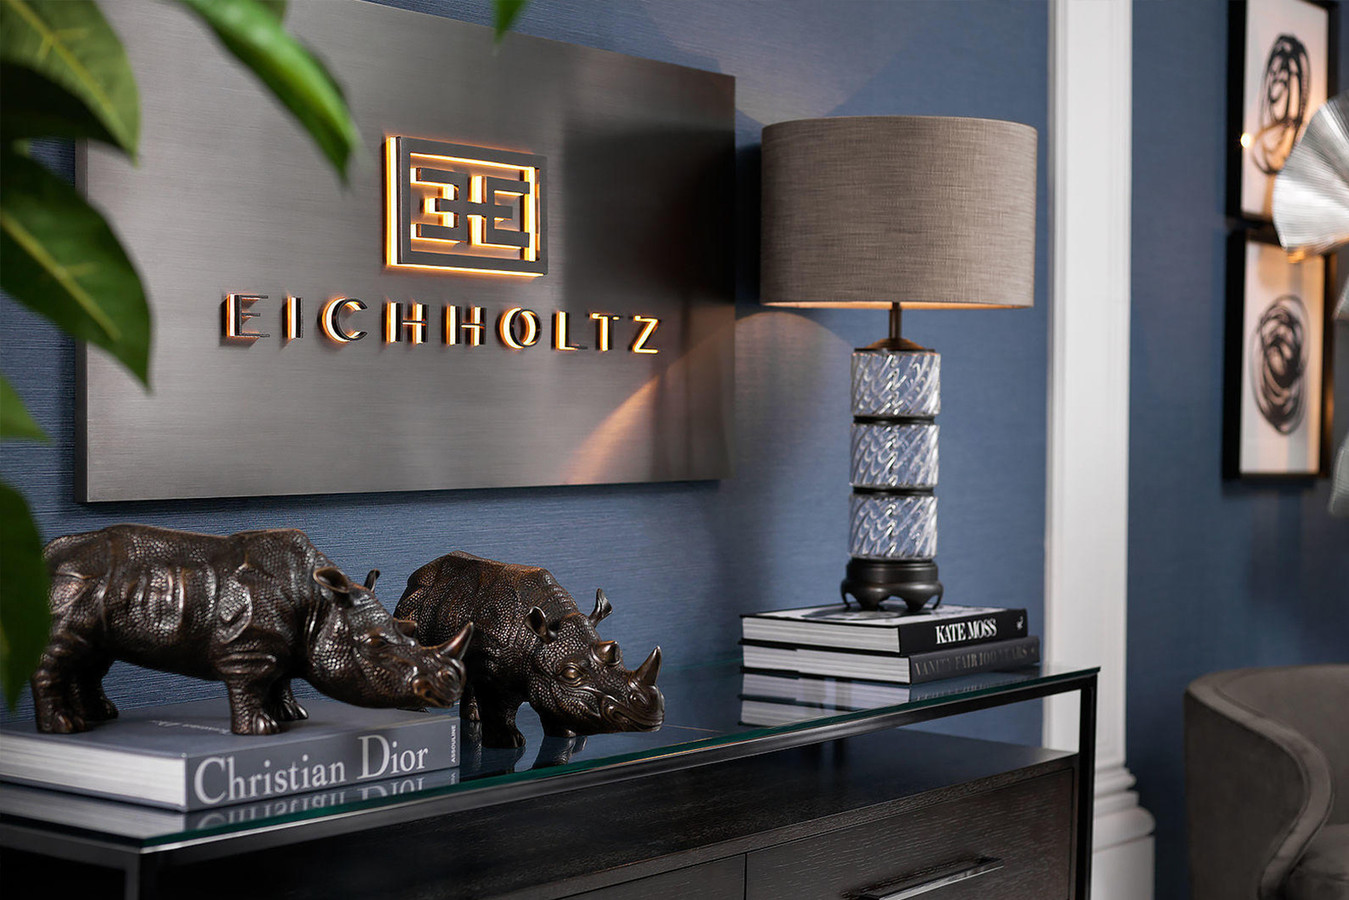 Eichholtz pri svojem oblikovanju na prvo mesto postavlja vaše potrebe po udobju, varnosti, zasebnosti in estetskem zadovoljstvu. Slovi kot prodajalec luksuznega pohištva, osvetlitve in dodatkov za vaš dom. Ponujajo subtilno sodoben pristop h klasičnemu oblikovanju, ki zagotavlja, da je vsak izdelek edinstven in ciljno usmerjen.